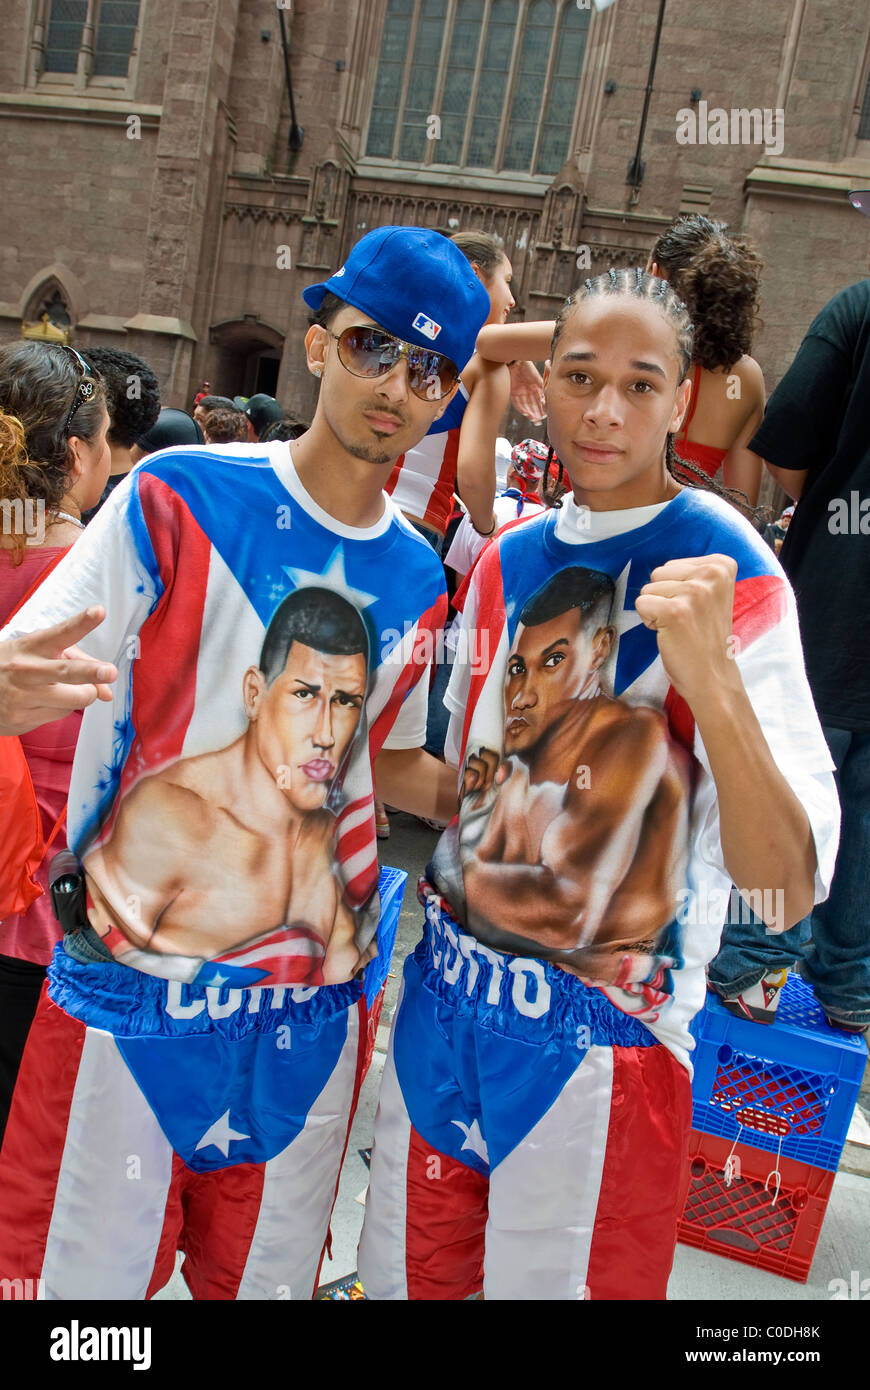 Le Puerto Rican Day Parade, tenue chaque année au mois de juin sur la Cinquième Avenue à New York. Banque D'Images